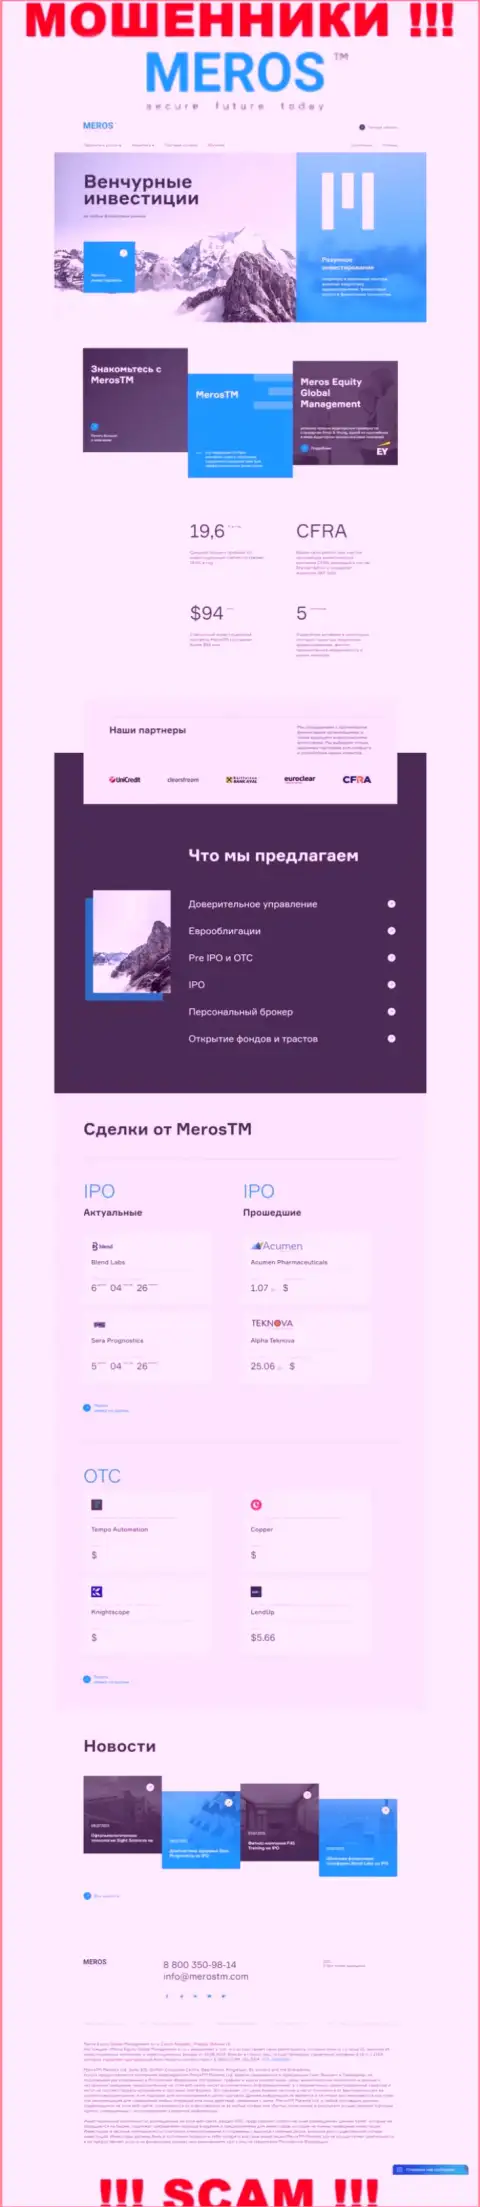 Разбор web-сервиса мошенников MerosTM Com